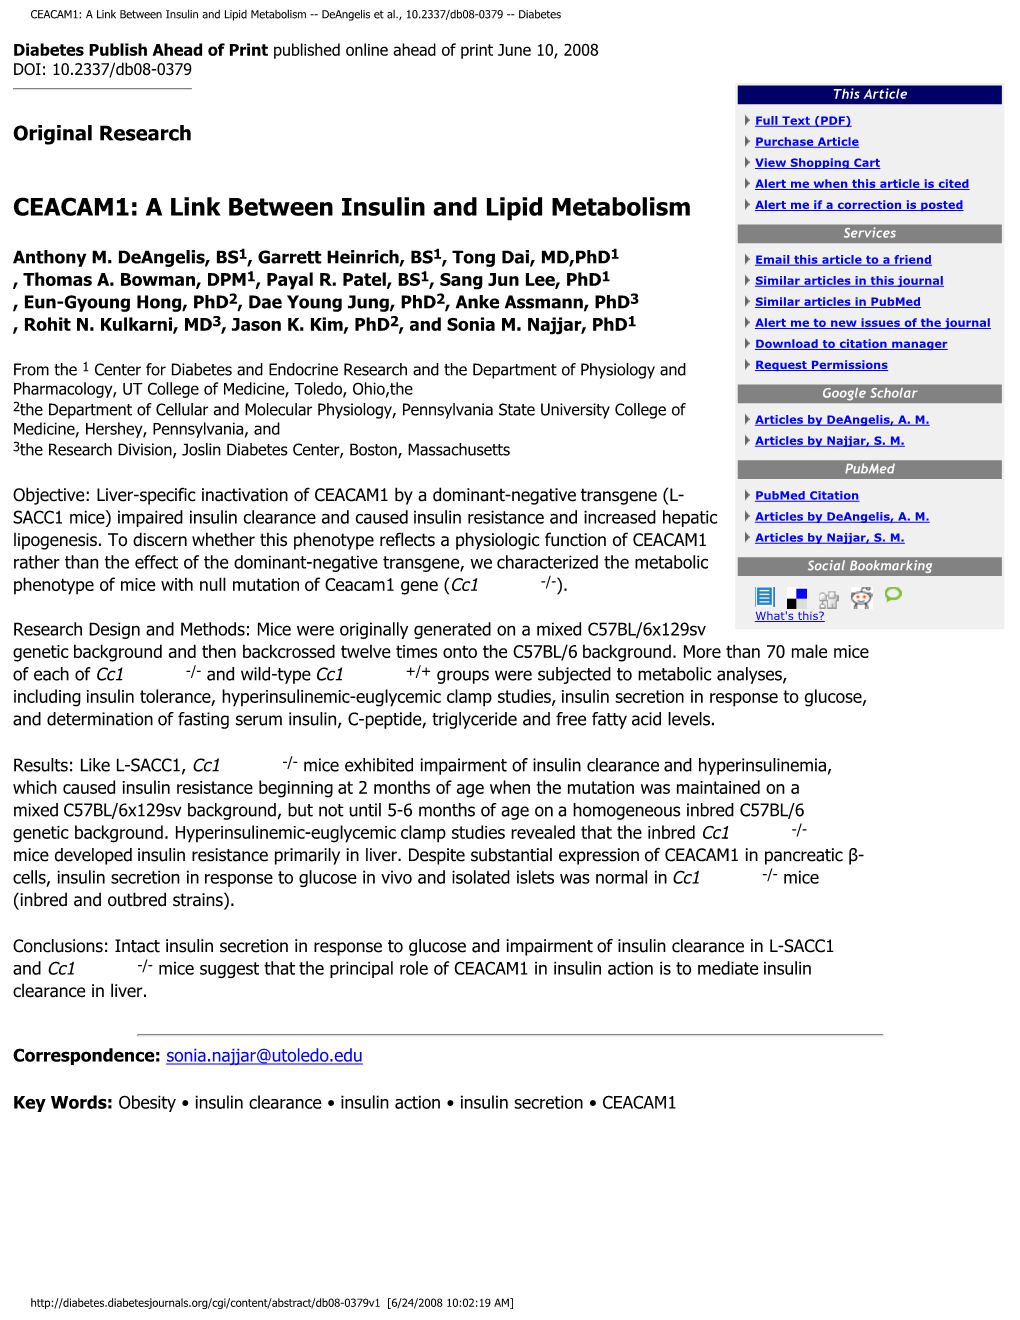 CEACAM1: a Link Between Insulin and Lipid Metabolism -- Deangelis Et Al., 10.2337/Db08-0379 -- Diabetes